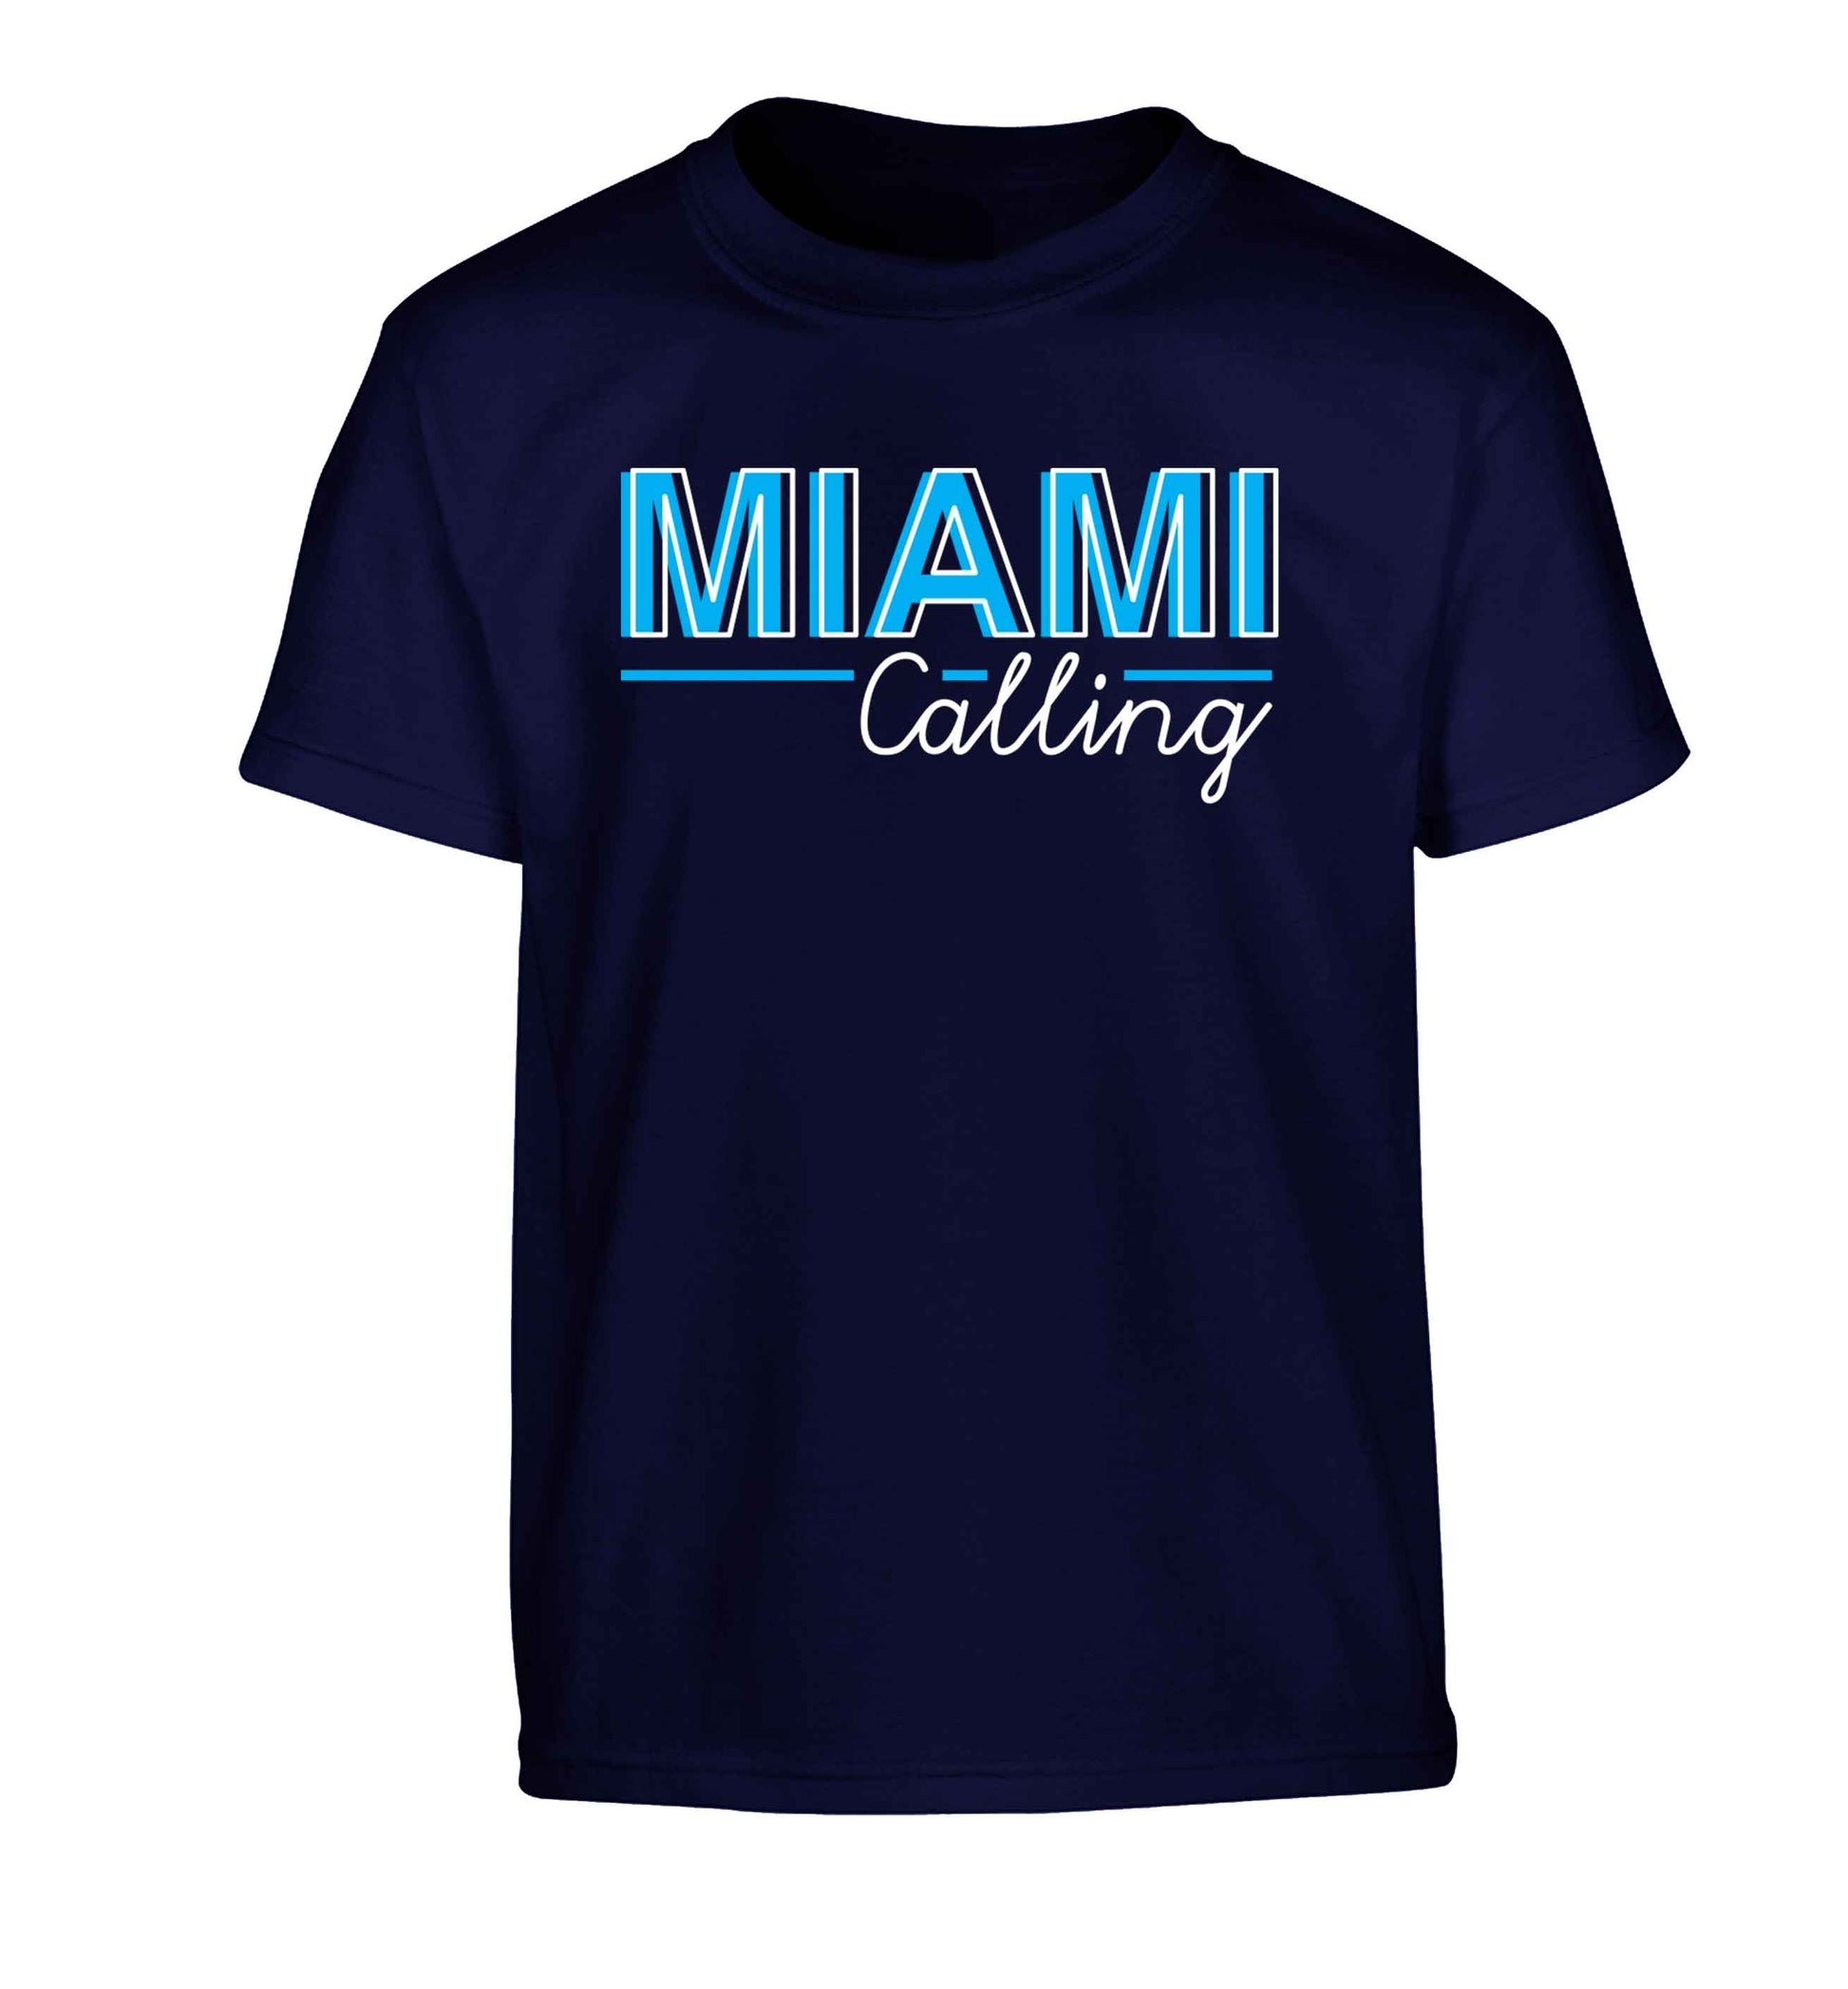 Miami calling Children's navy Tshirt 12-13 Years